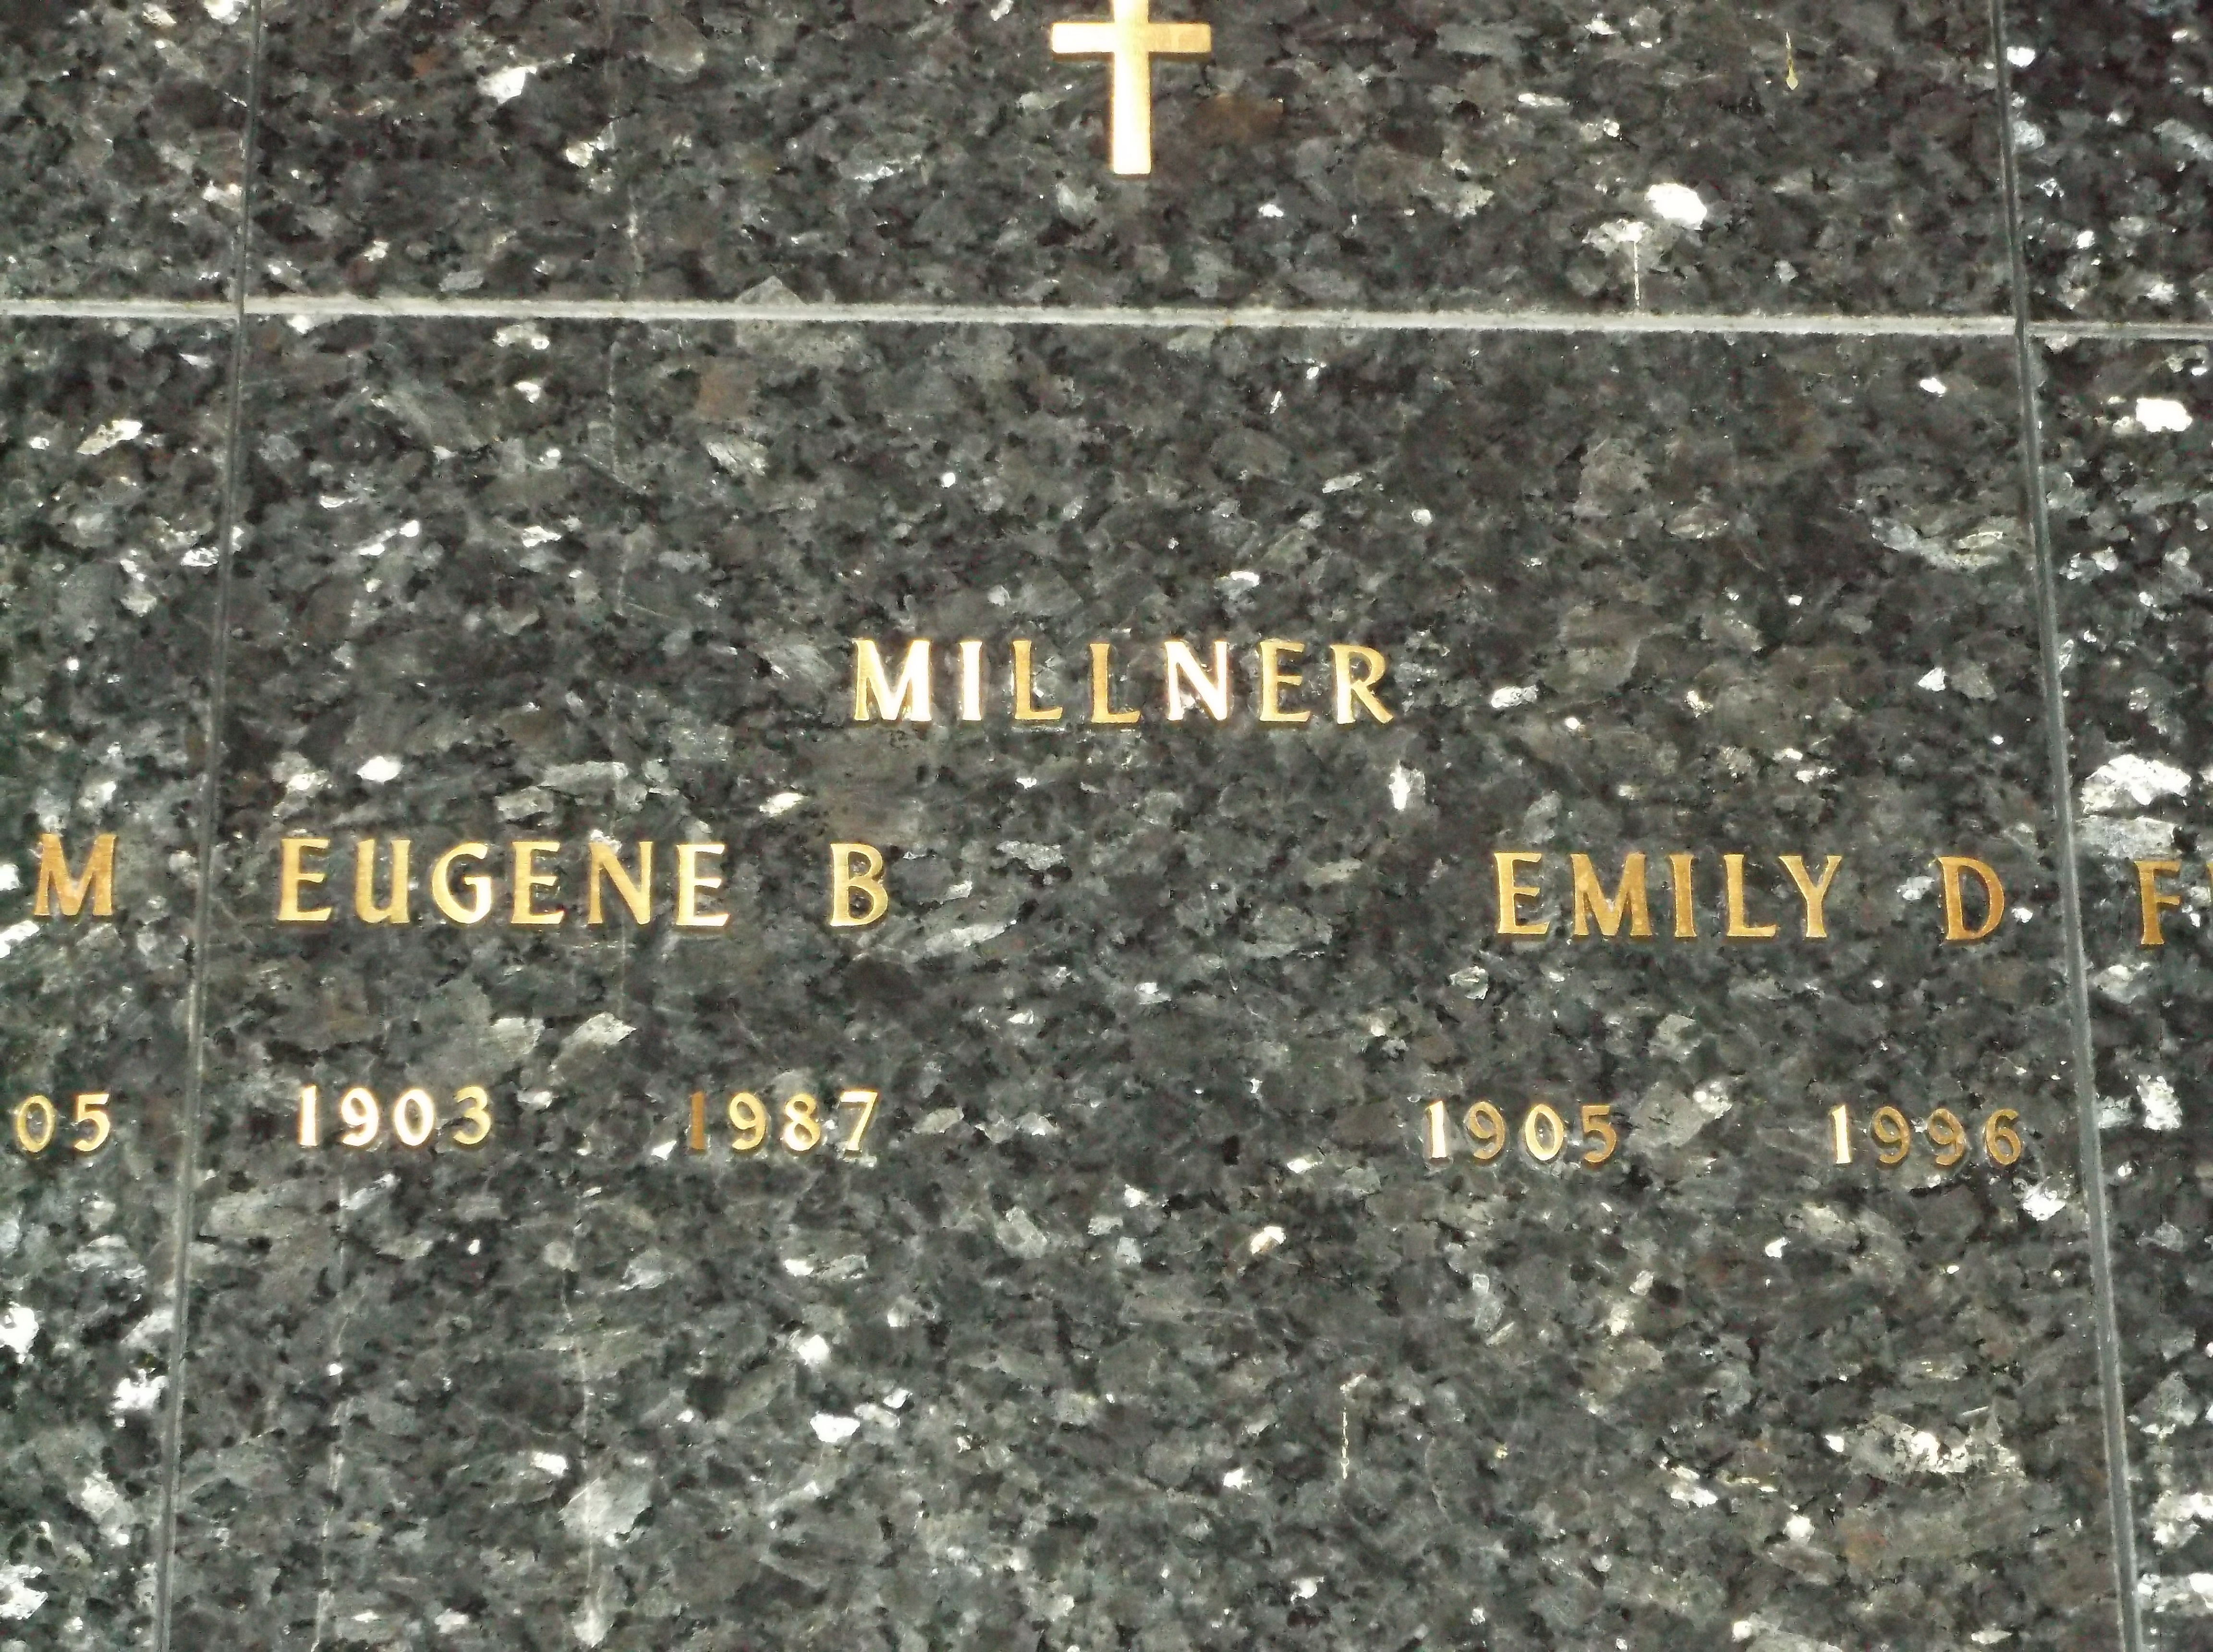 Emily D Millner